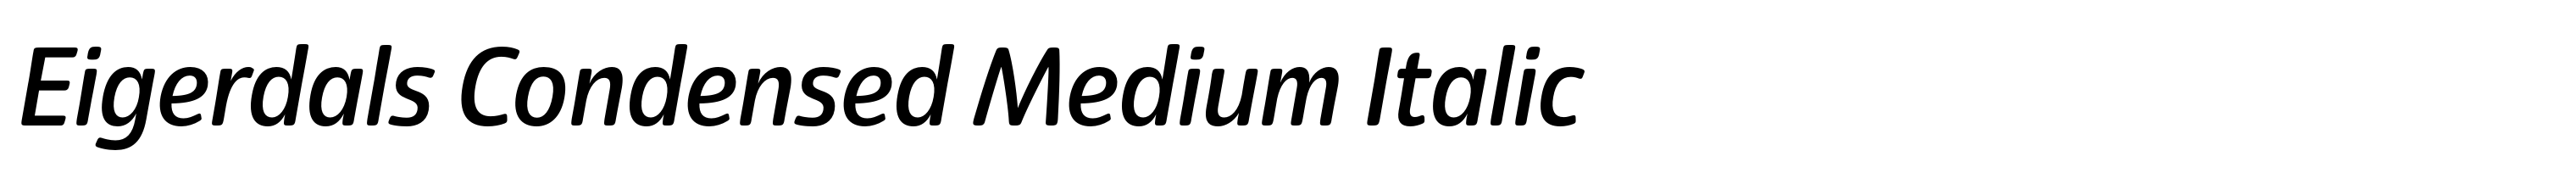 Eigerdals Condensed Medium Italic